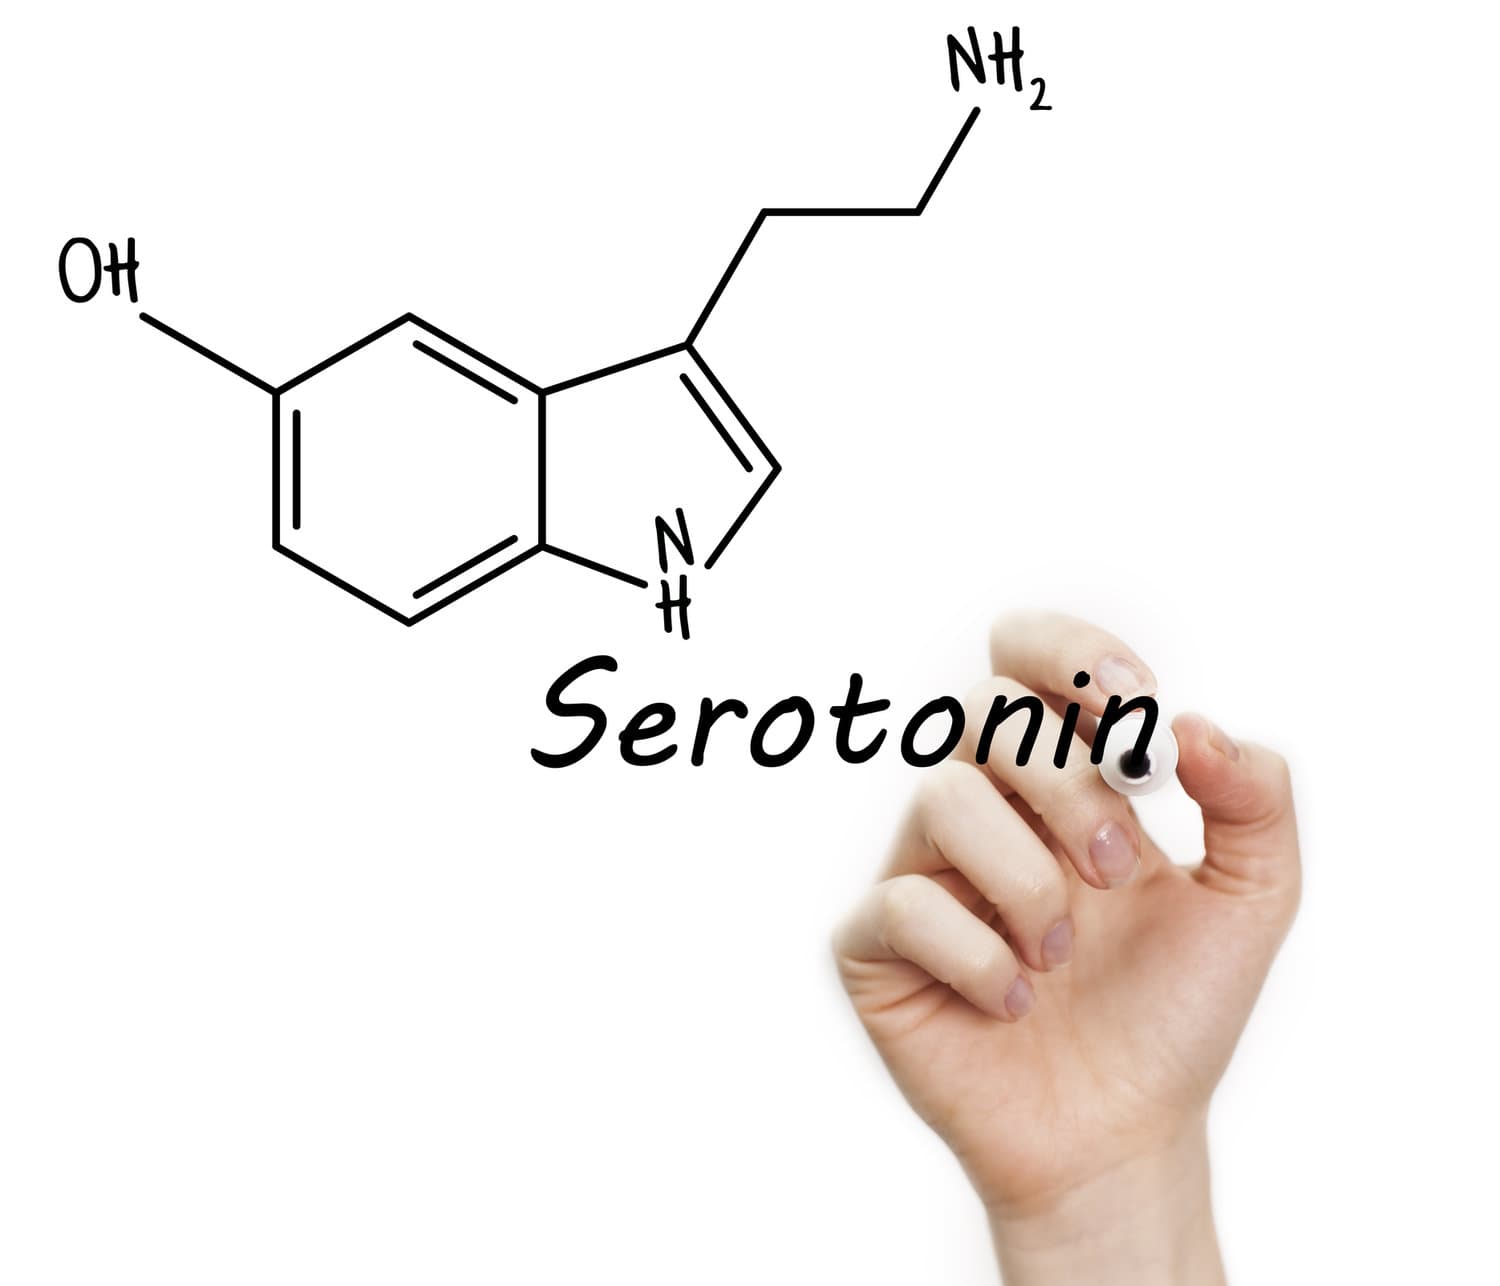 Scientific whiteboard info on serotonin